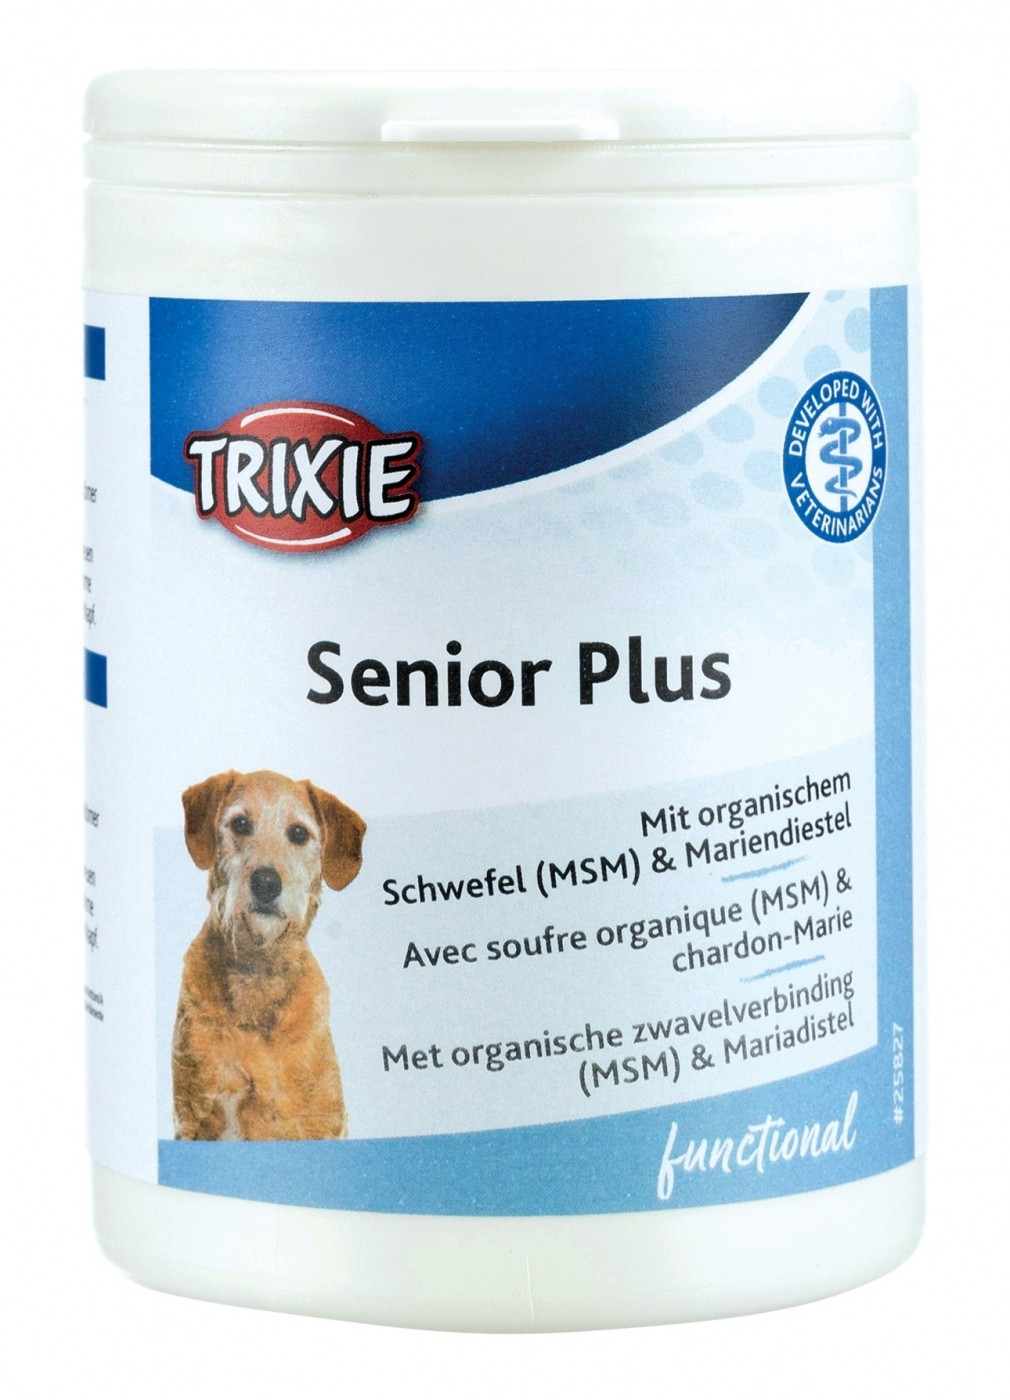 Senior Plus Nahrungsergänzungsmittel für ältere Hunde